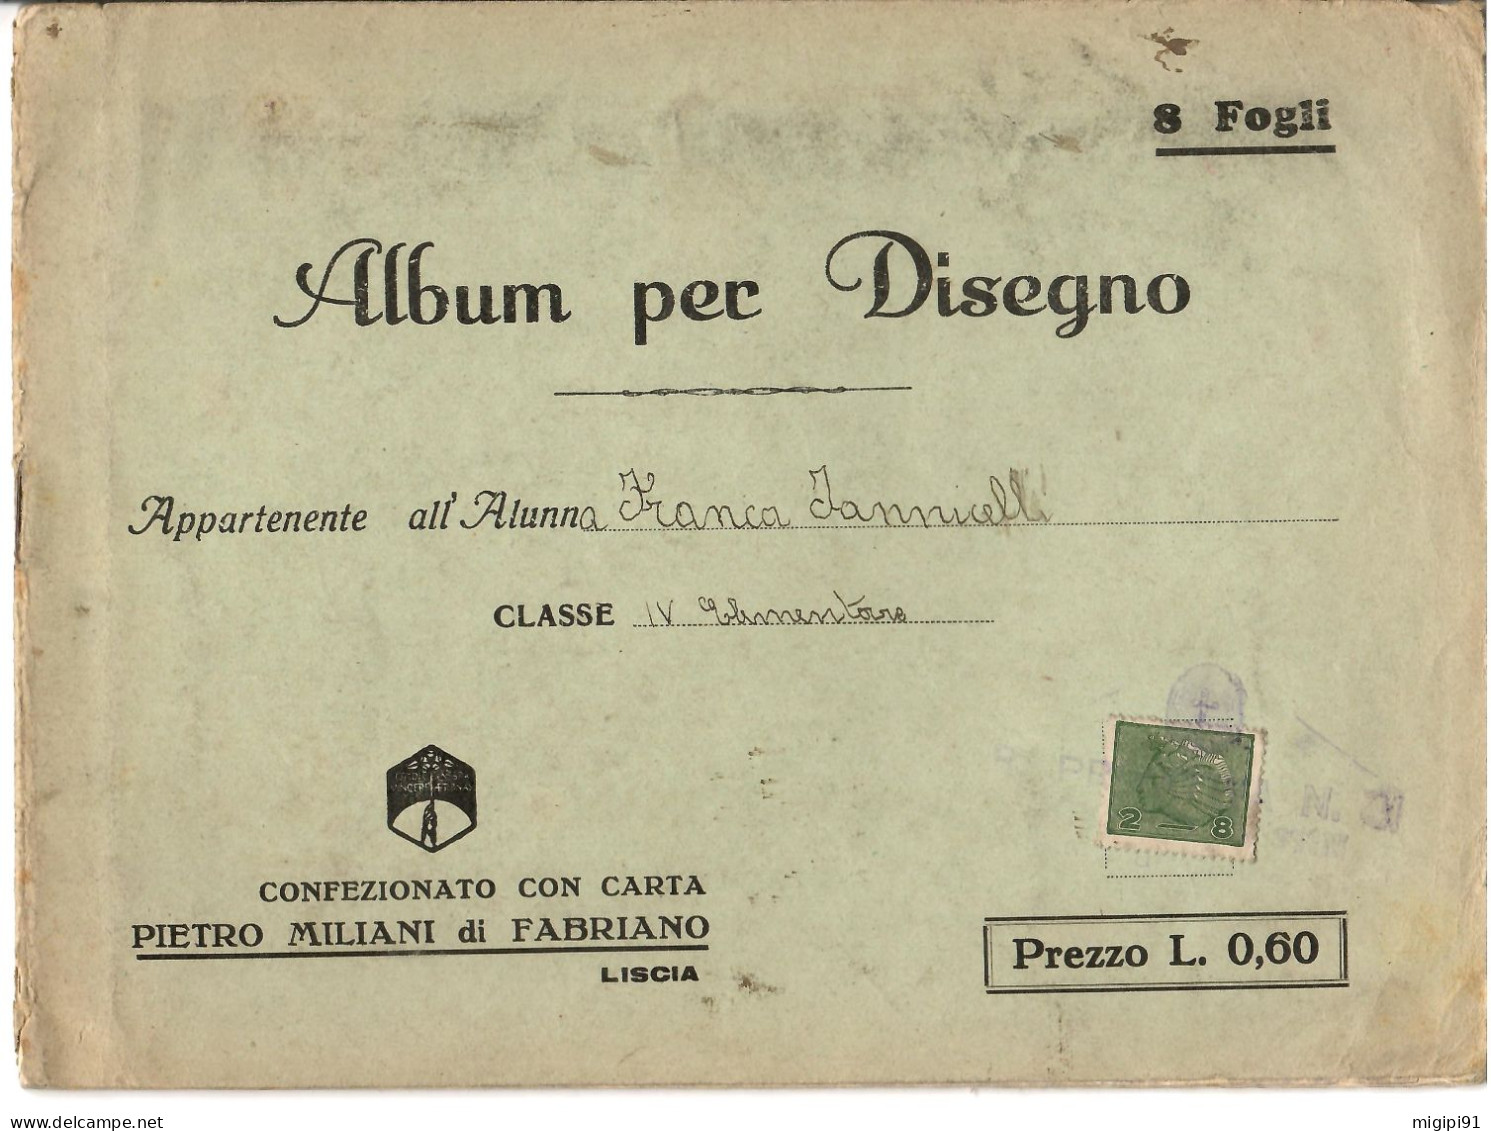 § Album Per Disegno Con Carta PIETRO MILANI Di FABRIANO-COOPERATIVA DI PRODUZIONE E LAVORO FRA CIECHI DI GUERRA§ § - Guerre 1914-18